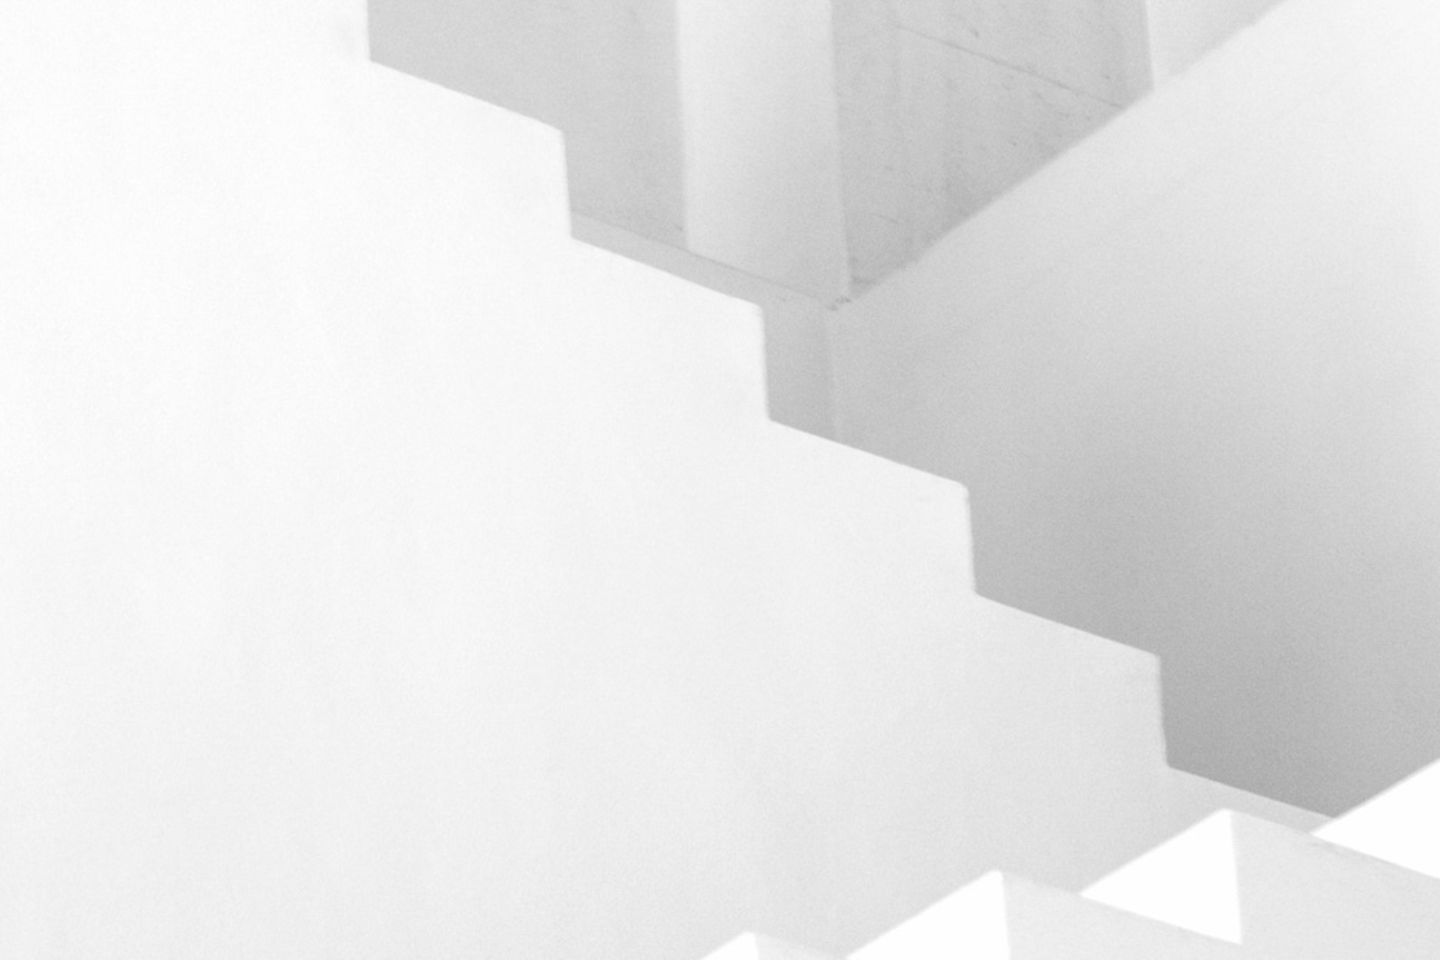 Escaleras de color blanco y gris sobre fondo blanco